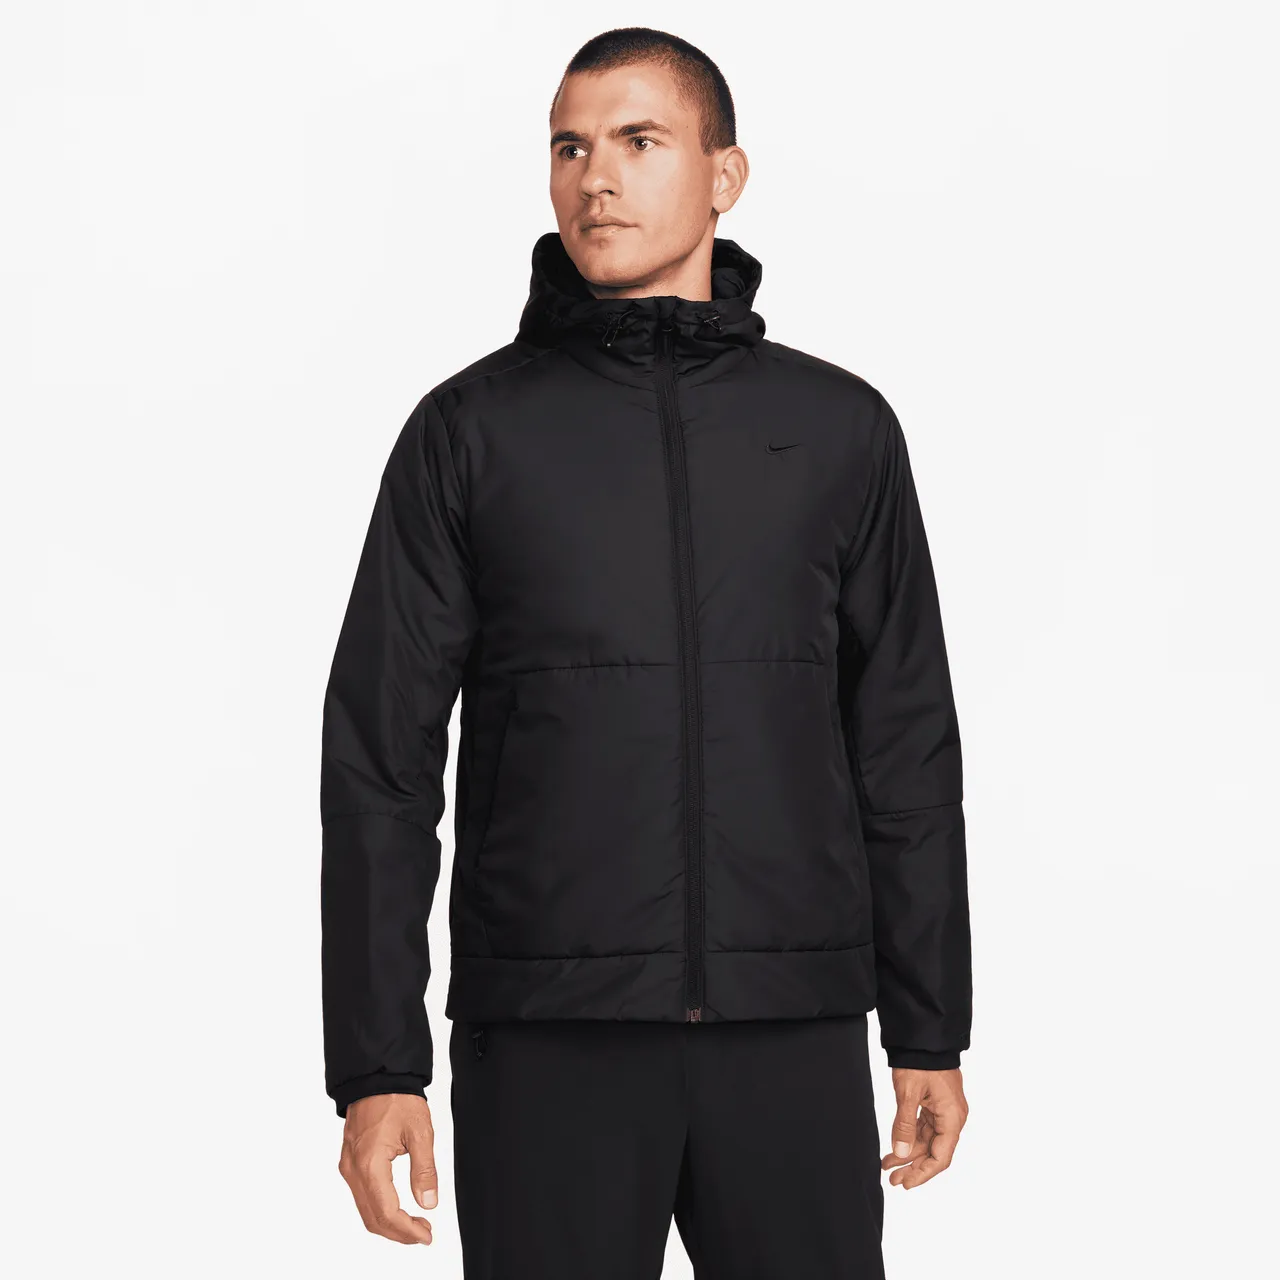 Nike Unlimited vielseitige Therma-FIT-Jacke für Herren - Schwarz